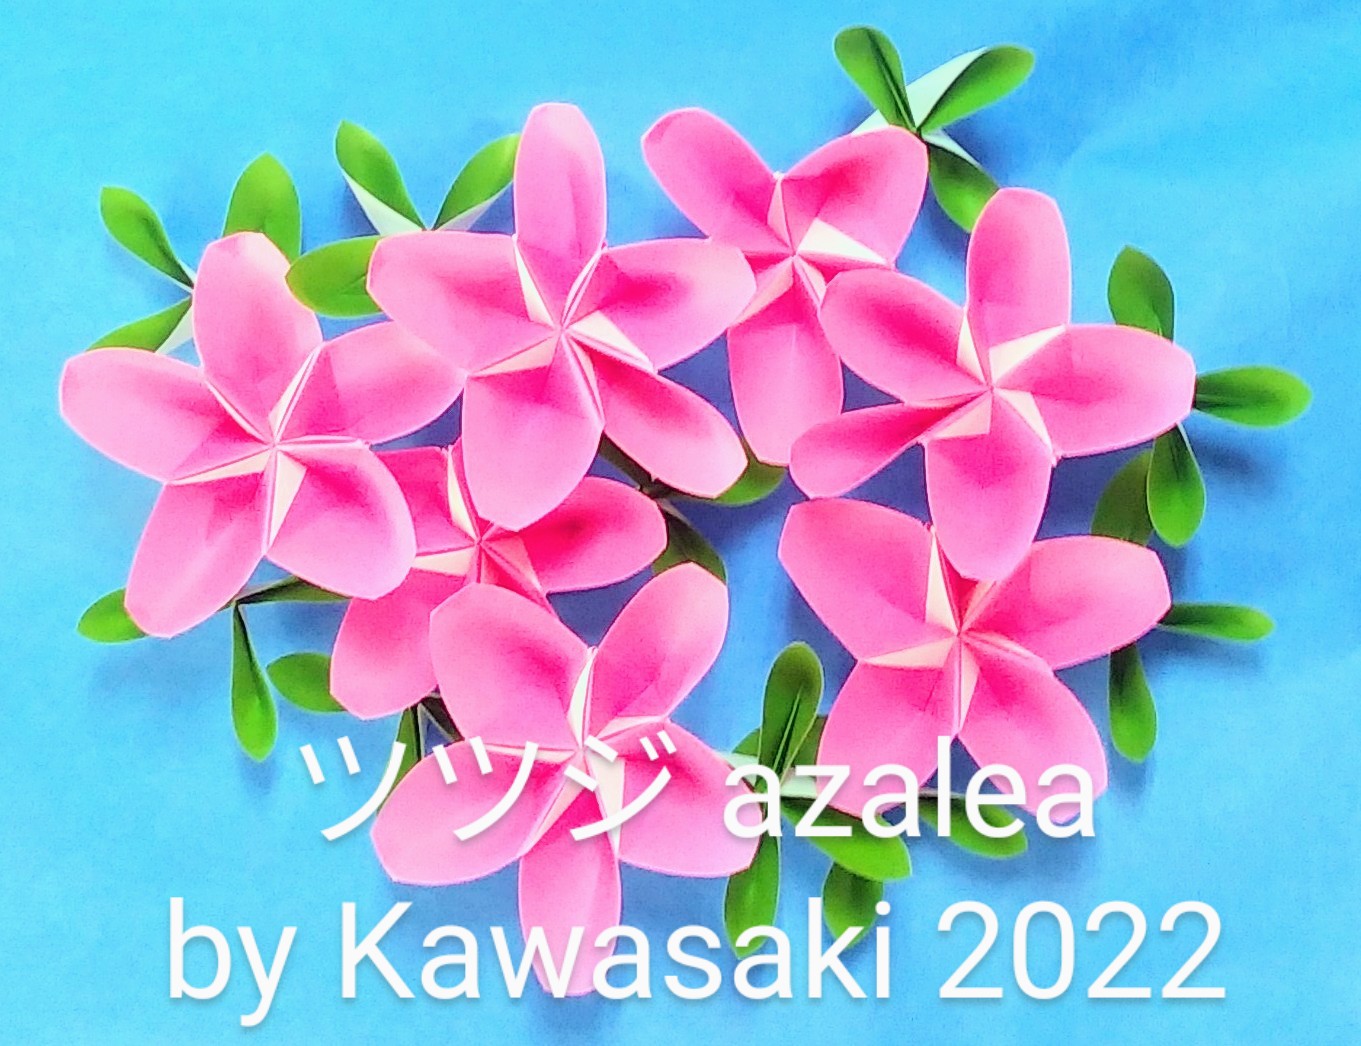 2022/11/24(Thu) 10:52「ツツジ azalea (作2022年11月24日7時26分） 」川崎敏和 T.Kawasaki
（創作者 Author：川崎敏和 T.Kawasaki,　製作者 Folder：川崎敏和 T.Kawasaki,　出典 Source：2022年川崎敏和折り紙キット Kawasaki origami kit 2022）
 【桜祭り】の姉妹作品です。1月23日16時24分に気づいた雄しべの折りだし方法と【ウクライナのひまわり】の花びらの折り技法で葉っぱの自然な折りと組みに成功しました。 